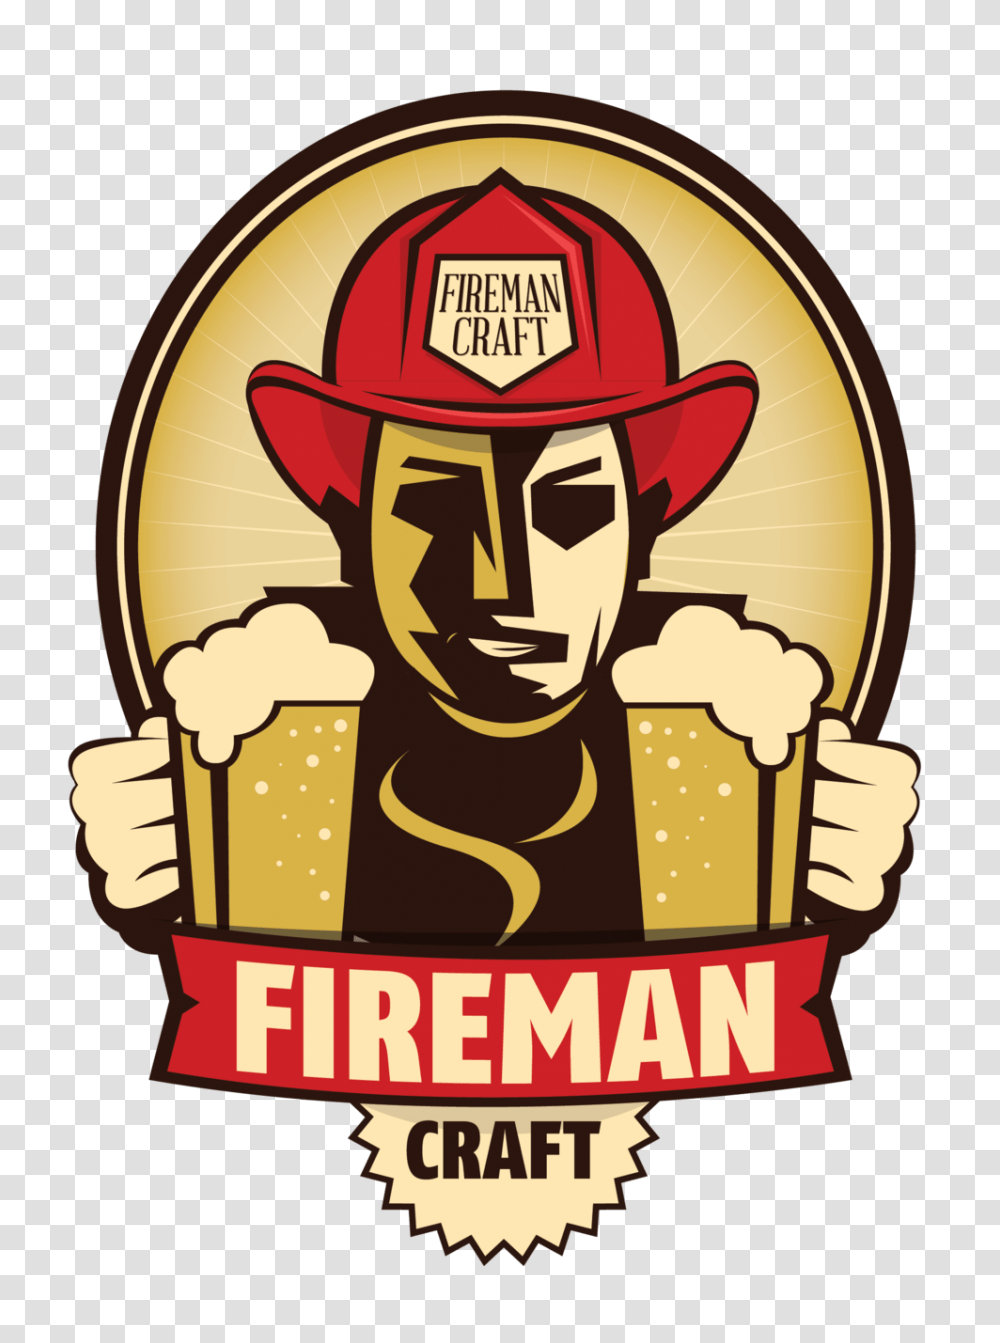 Fireman Craft Beer Jp Morales, Label, Logo Transparent Png